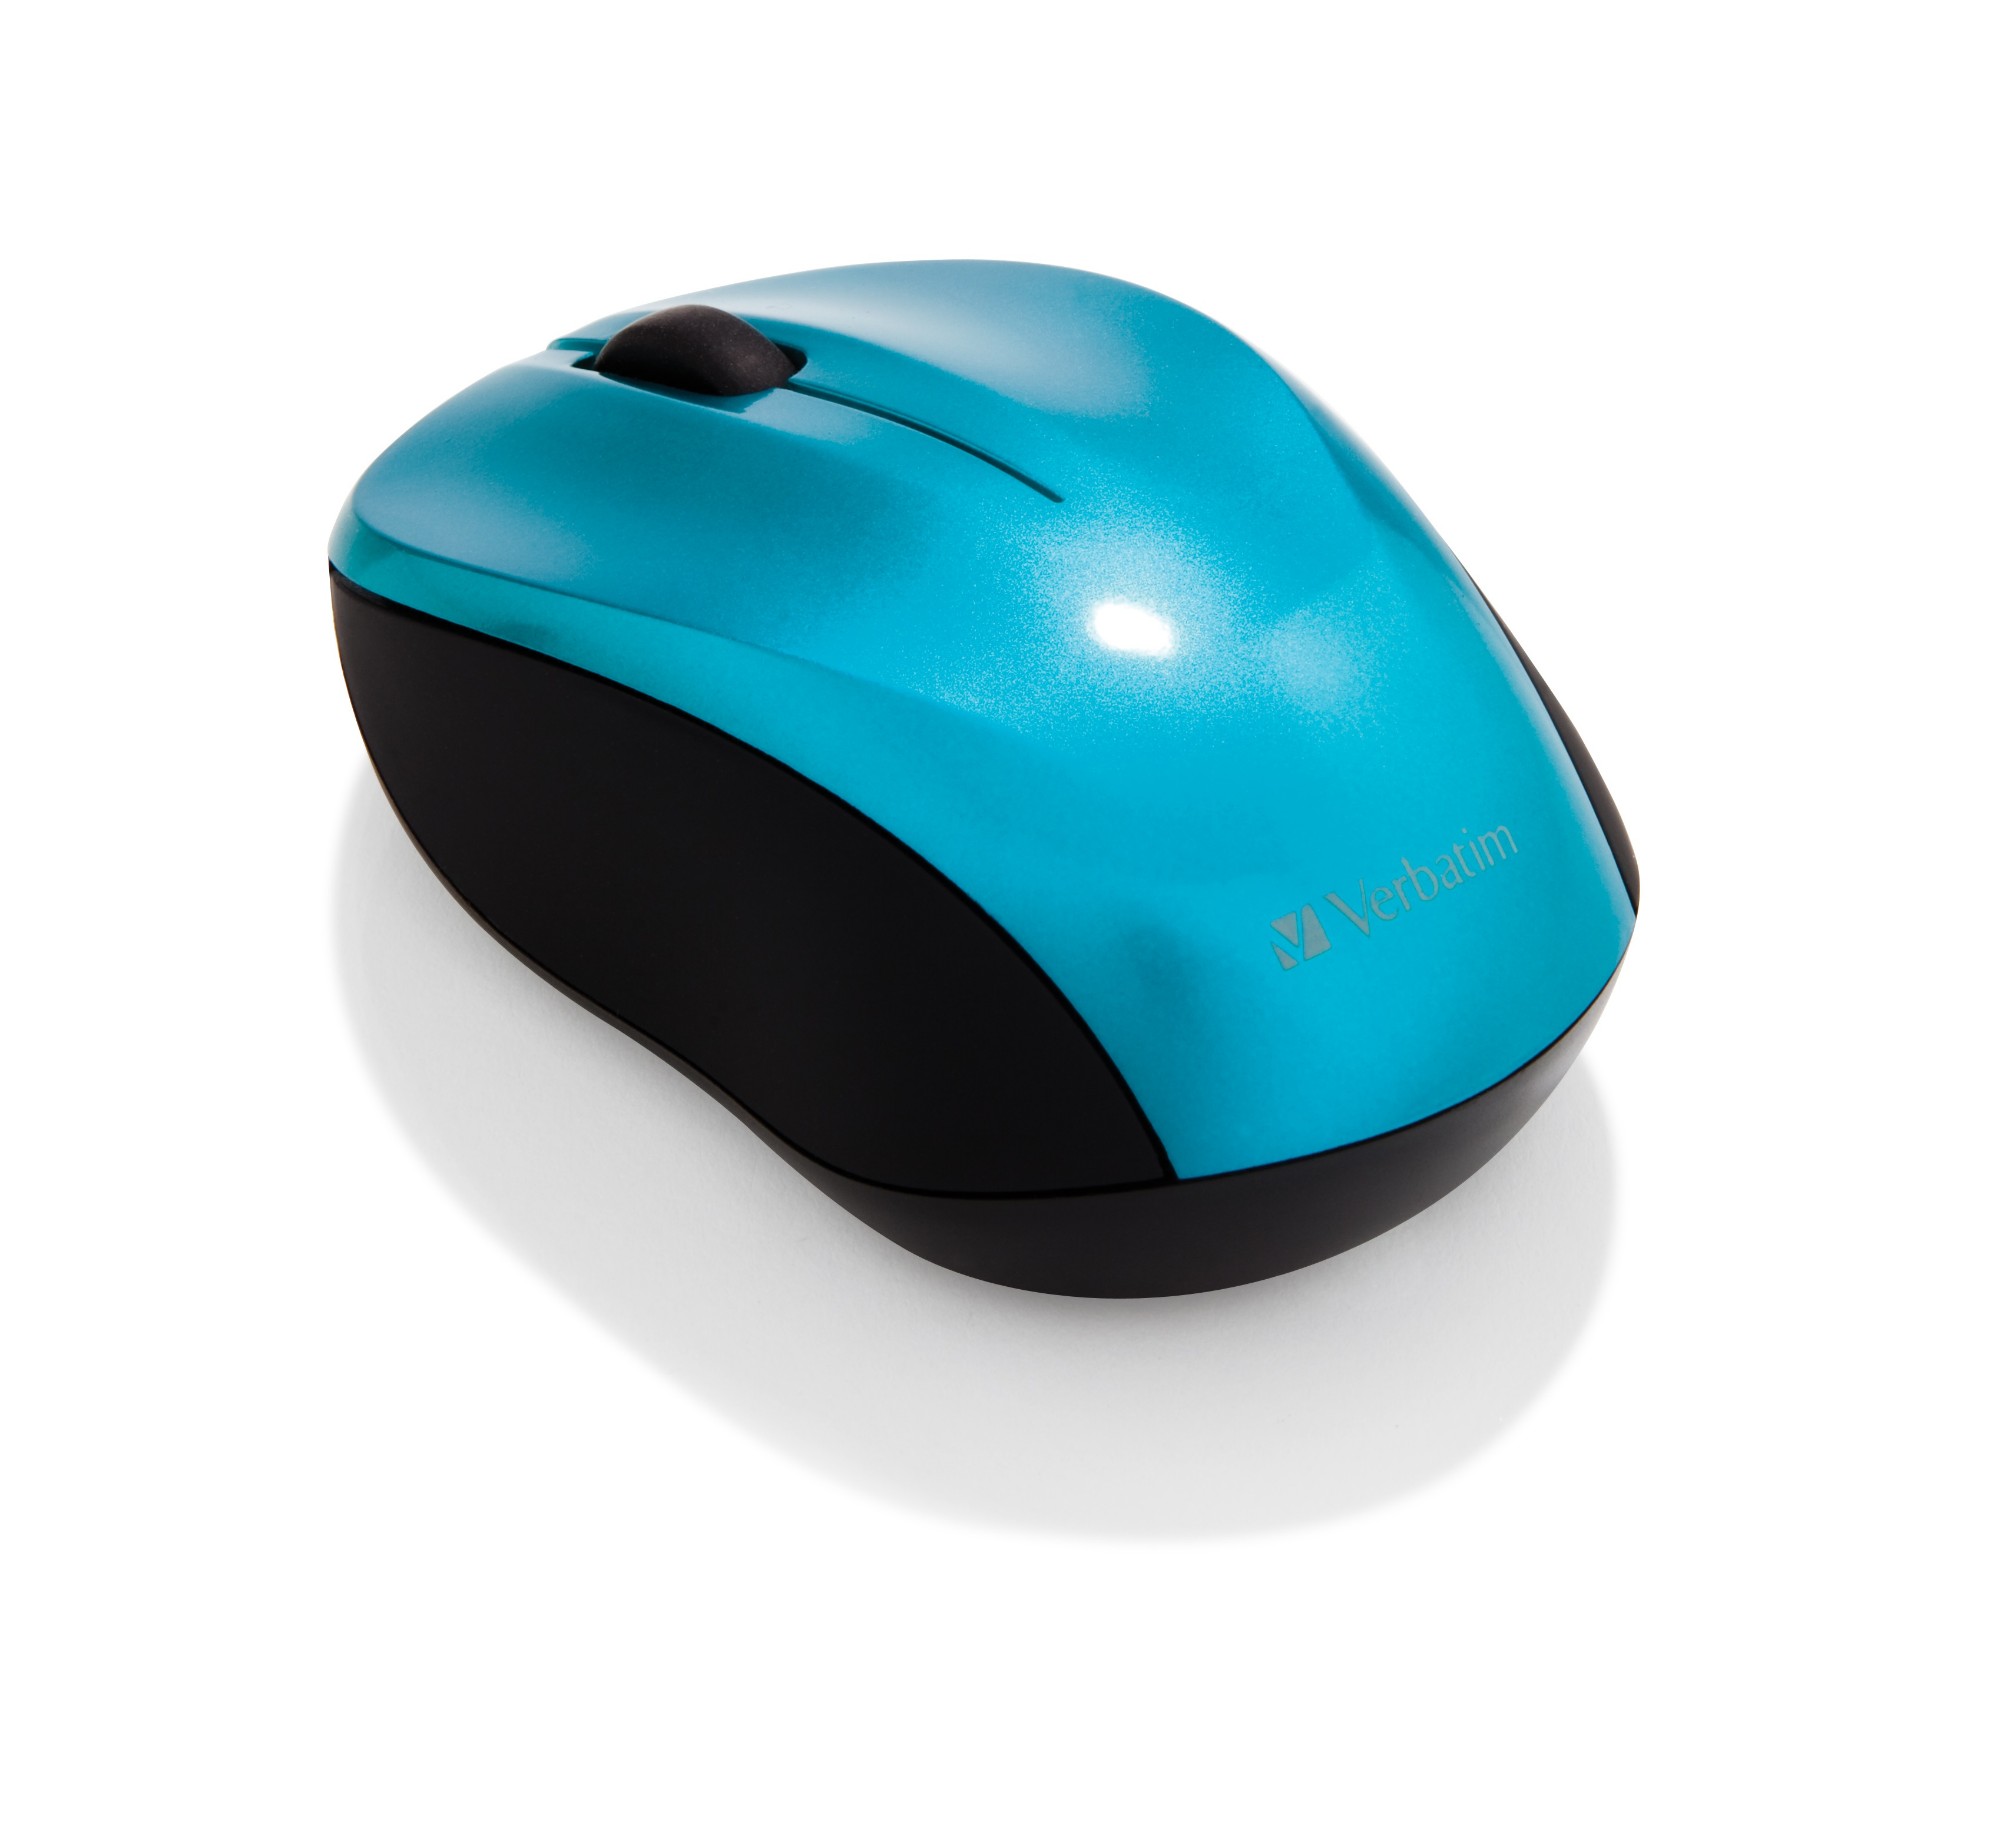 Беспроводная мышь синяя. Мышь Logitech Nano. VX Nano мышь беспроводная 2007 года. Мышь Verbatim Wireless Mouse go Nano Orange USB. Синяя компьютерная мышка беспроводная.